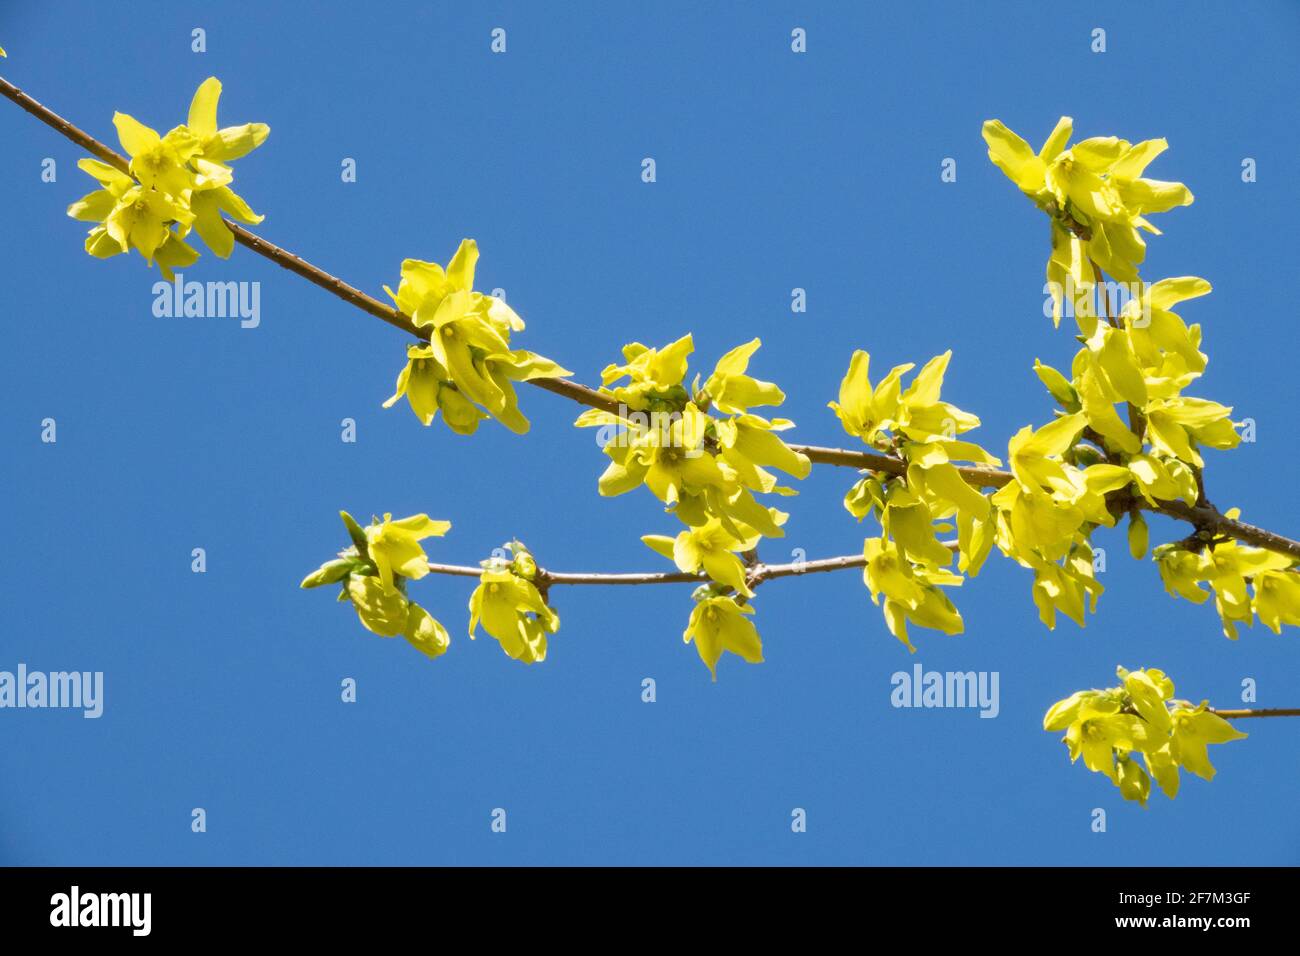 Forsythia x flores intermedia contra el cielo azul Foto de stock